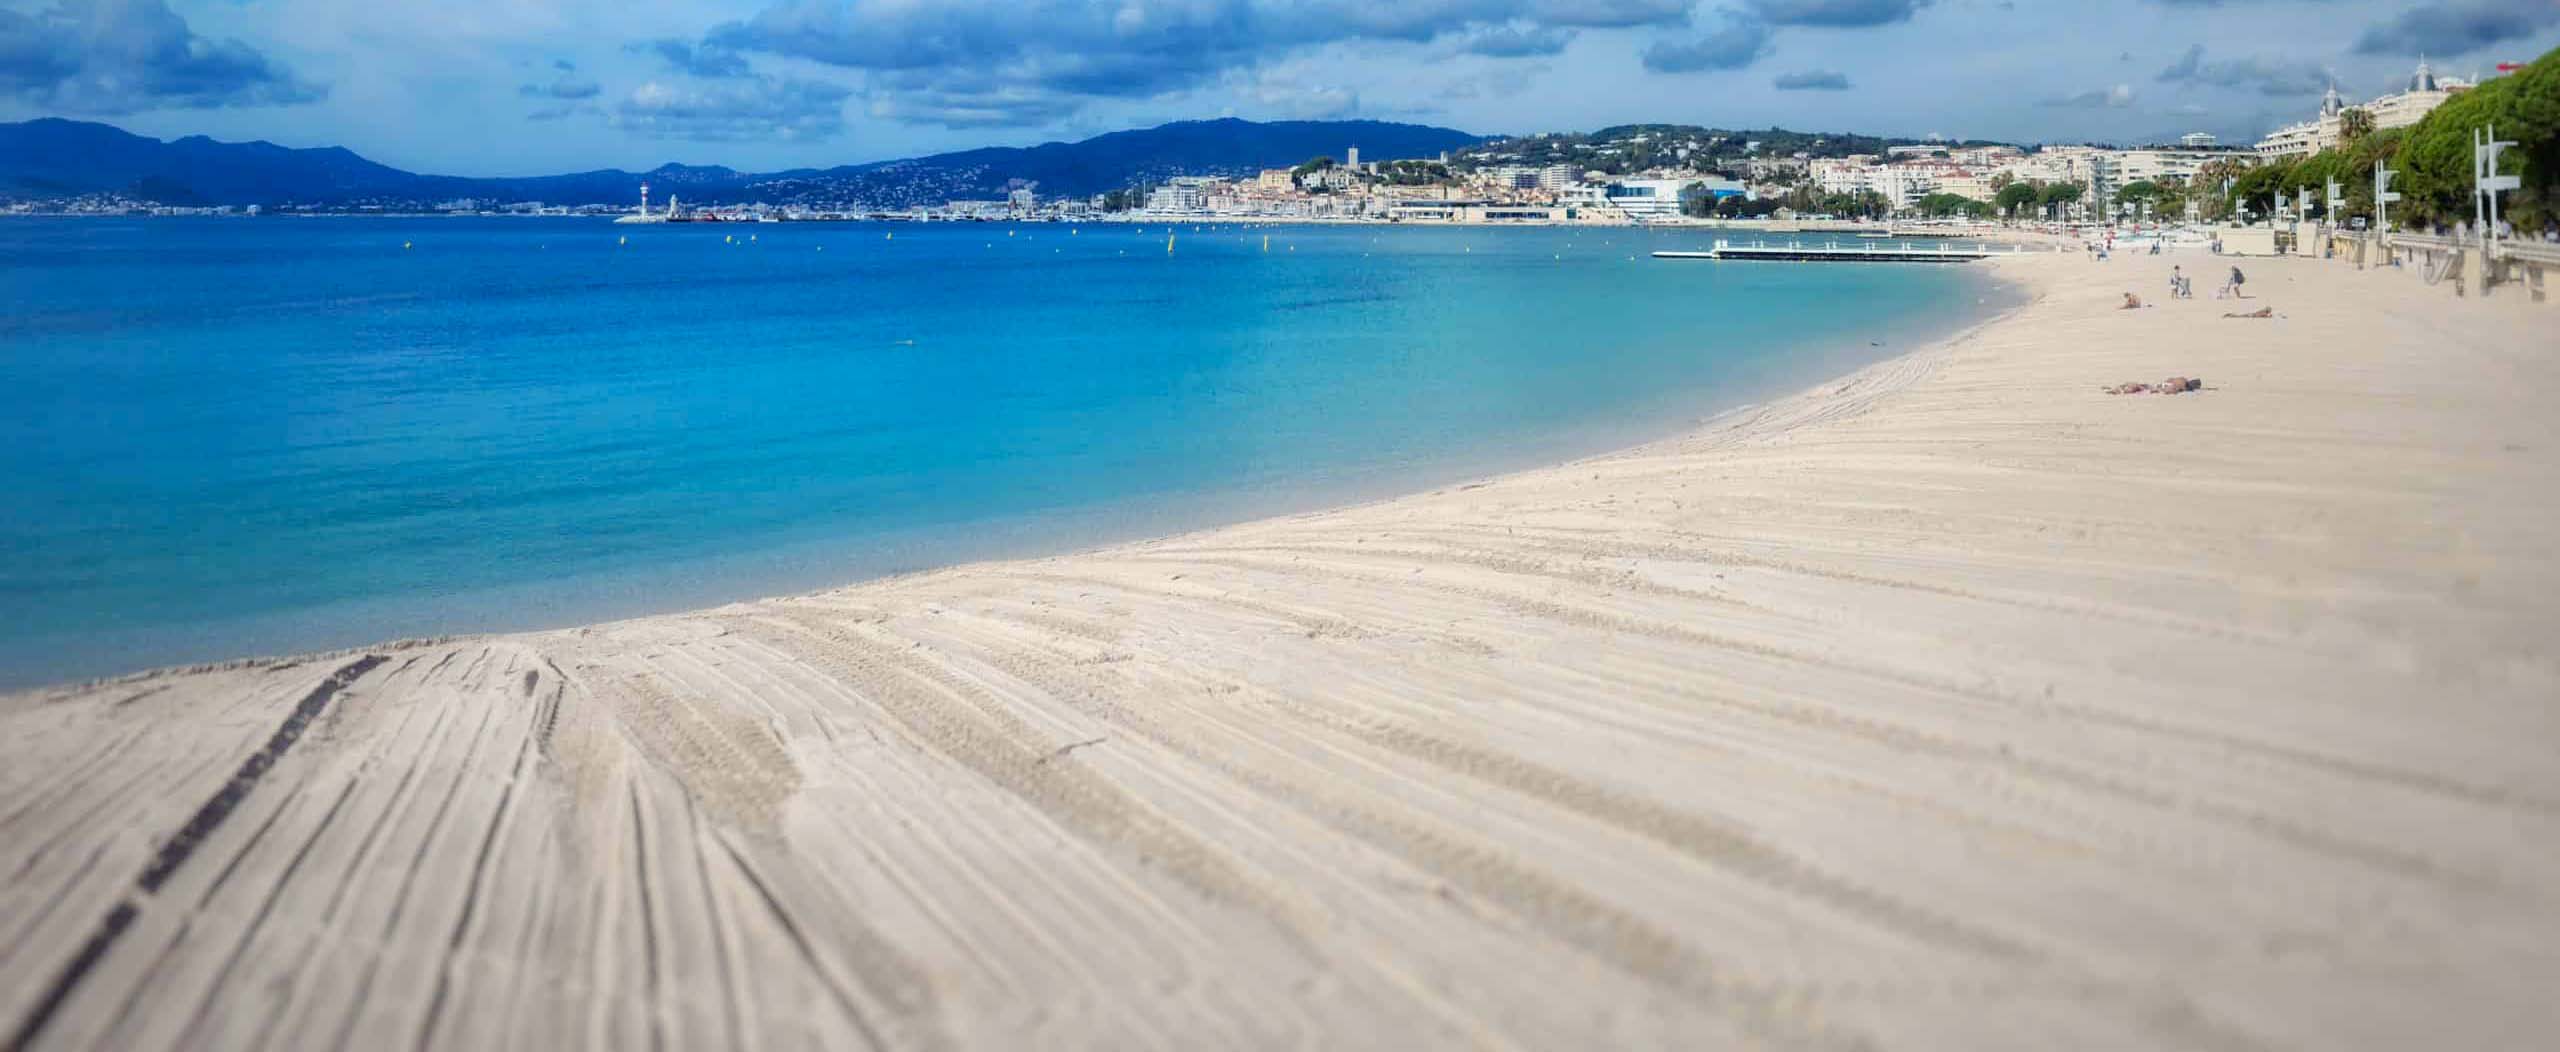 Plag de Cannes hôtel Sea You Soon